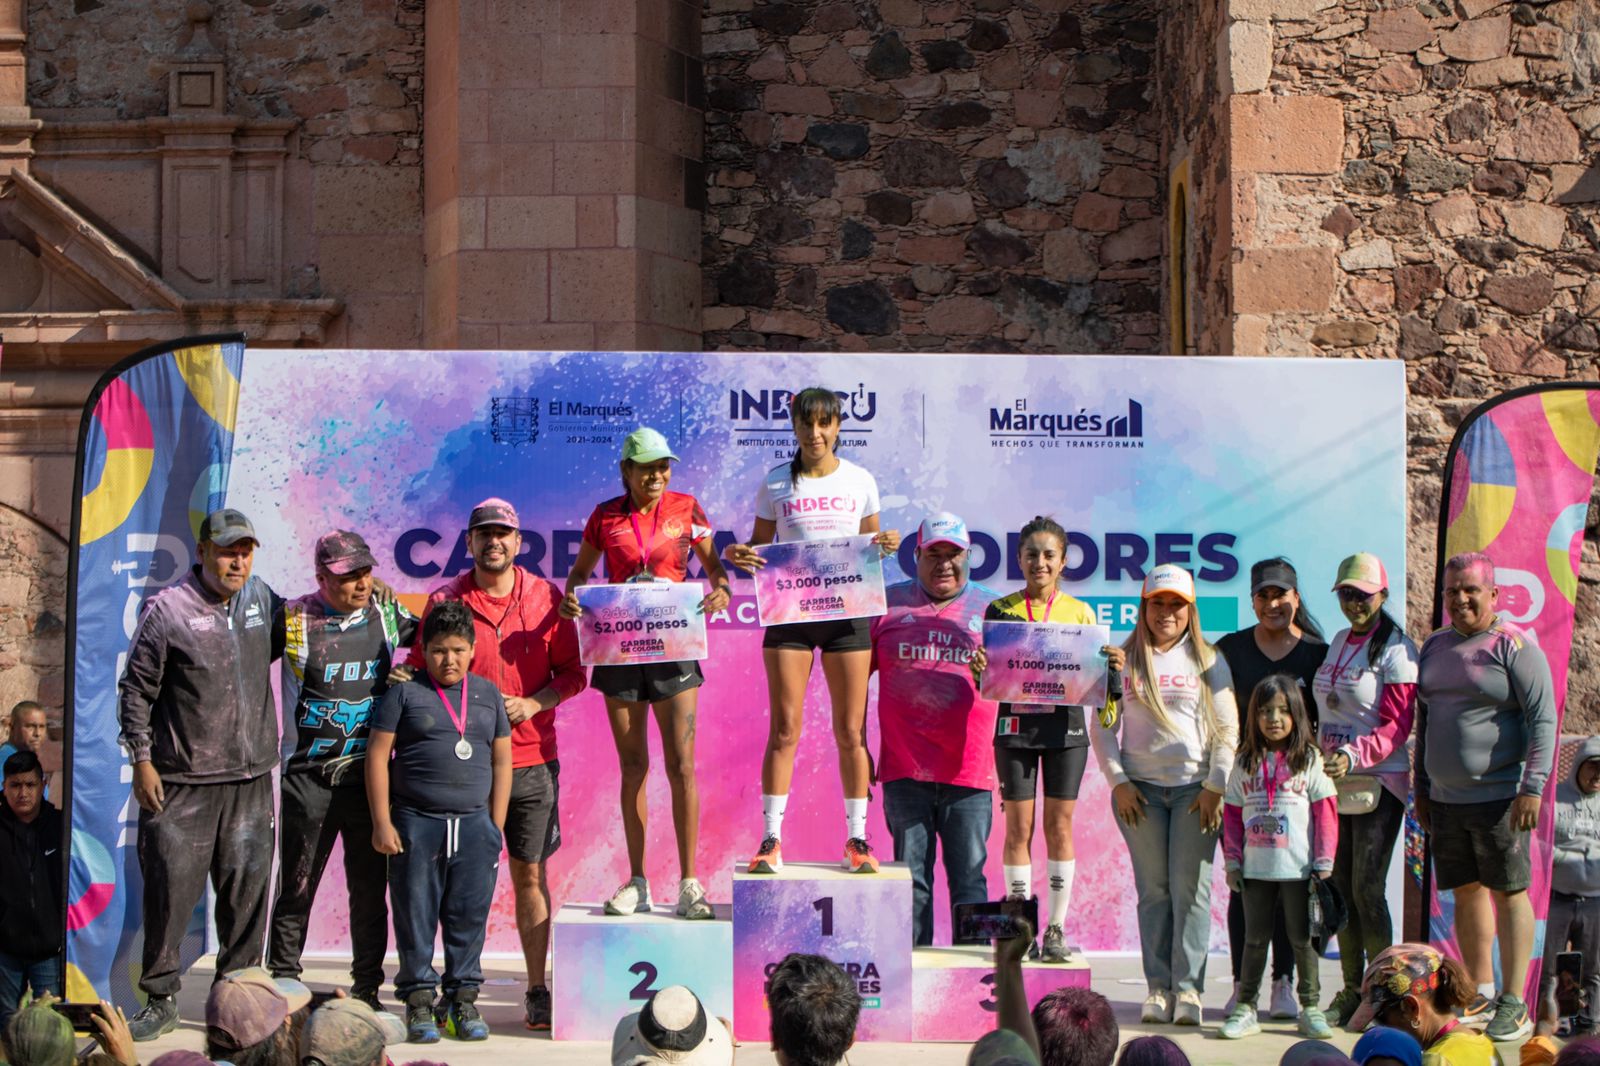 El municipio de El Marqués realizó la Carrera de Colores para conmemorar el Día Internacional de la Mujer